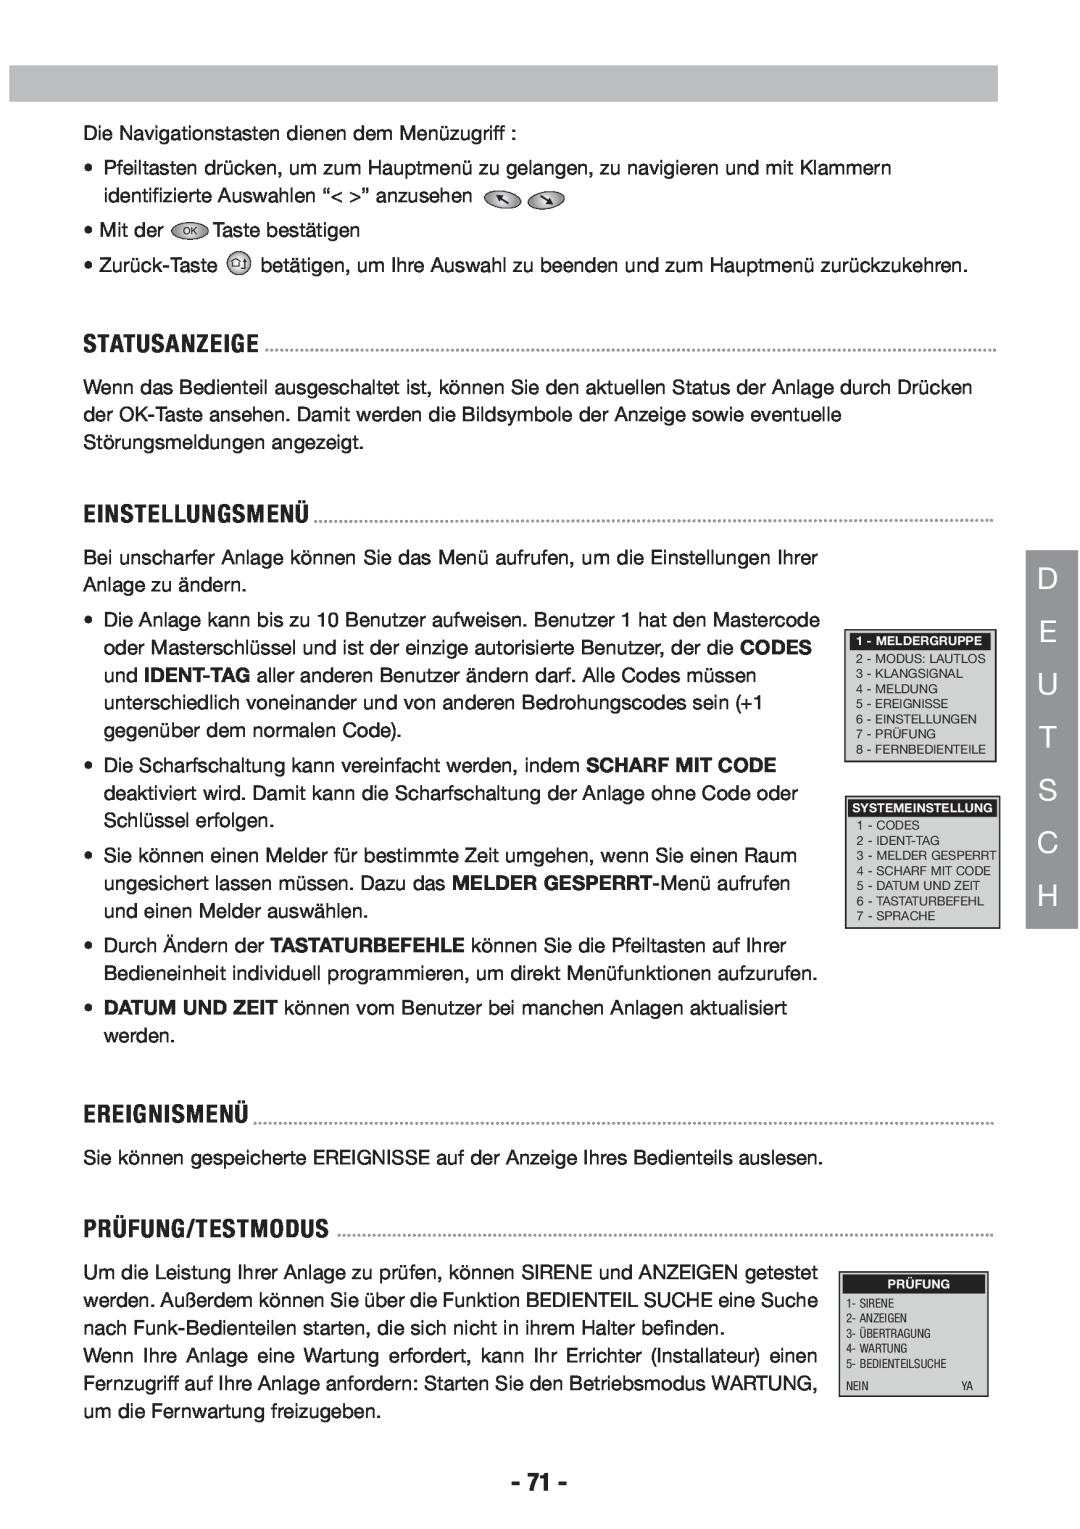 Honeywell EKZ008200B user manual D E U T S C H, Statusanzeige, Einstellungsmenü, Ereignismenü, Prüfung/Testmodus 